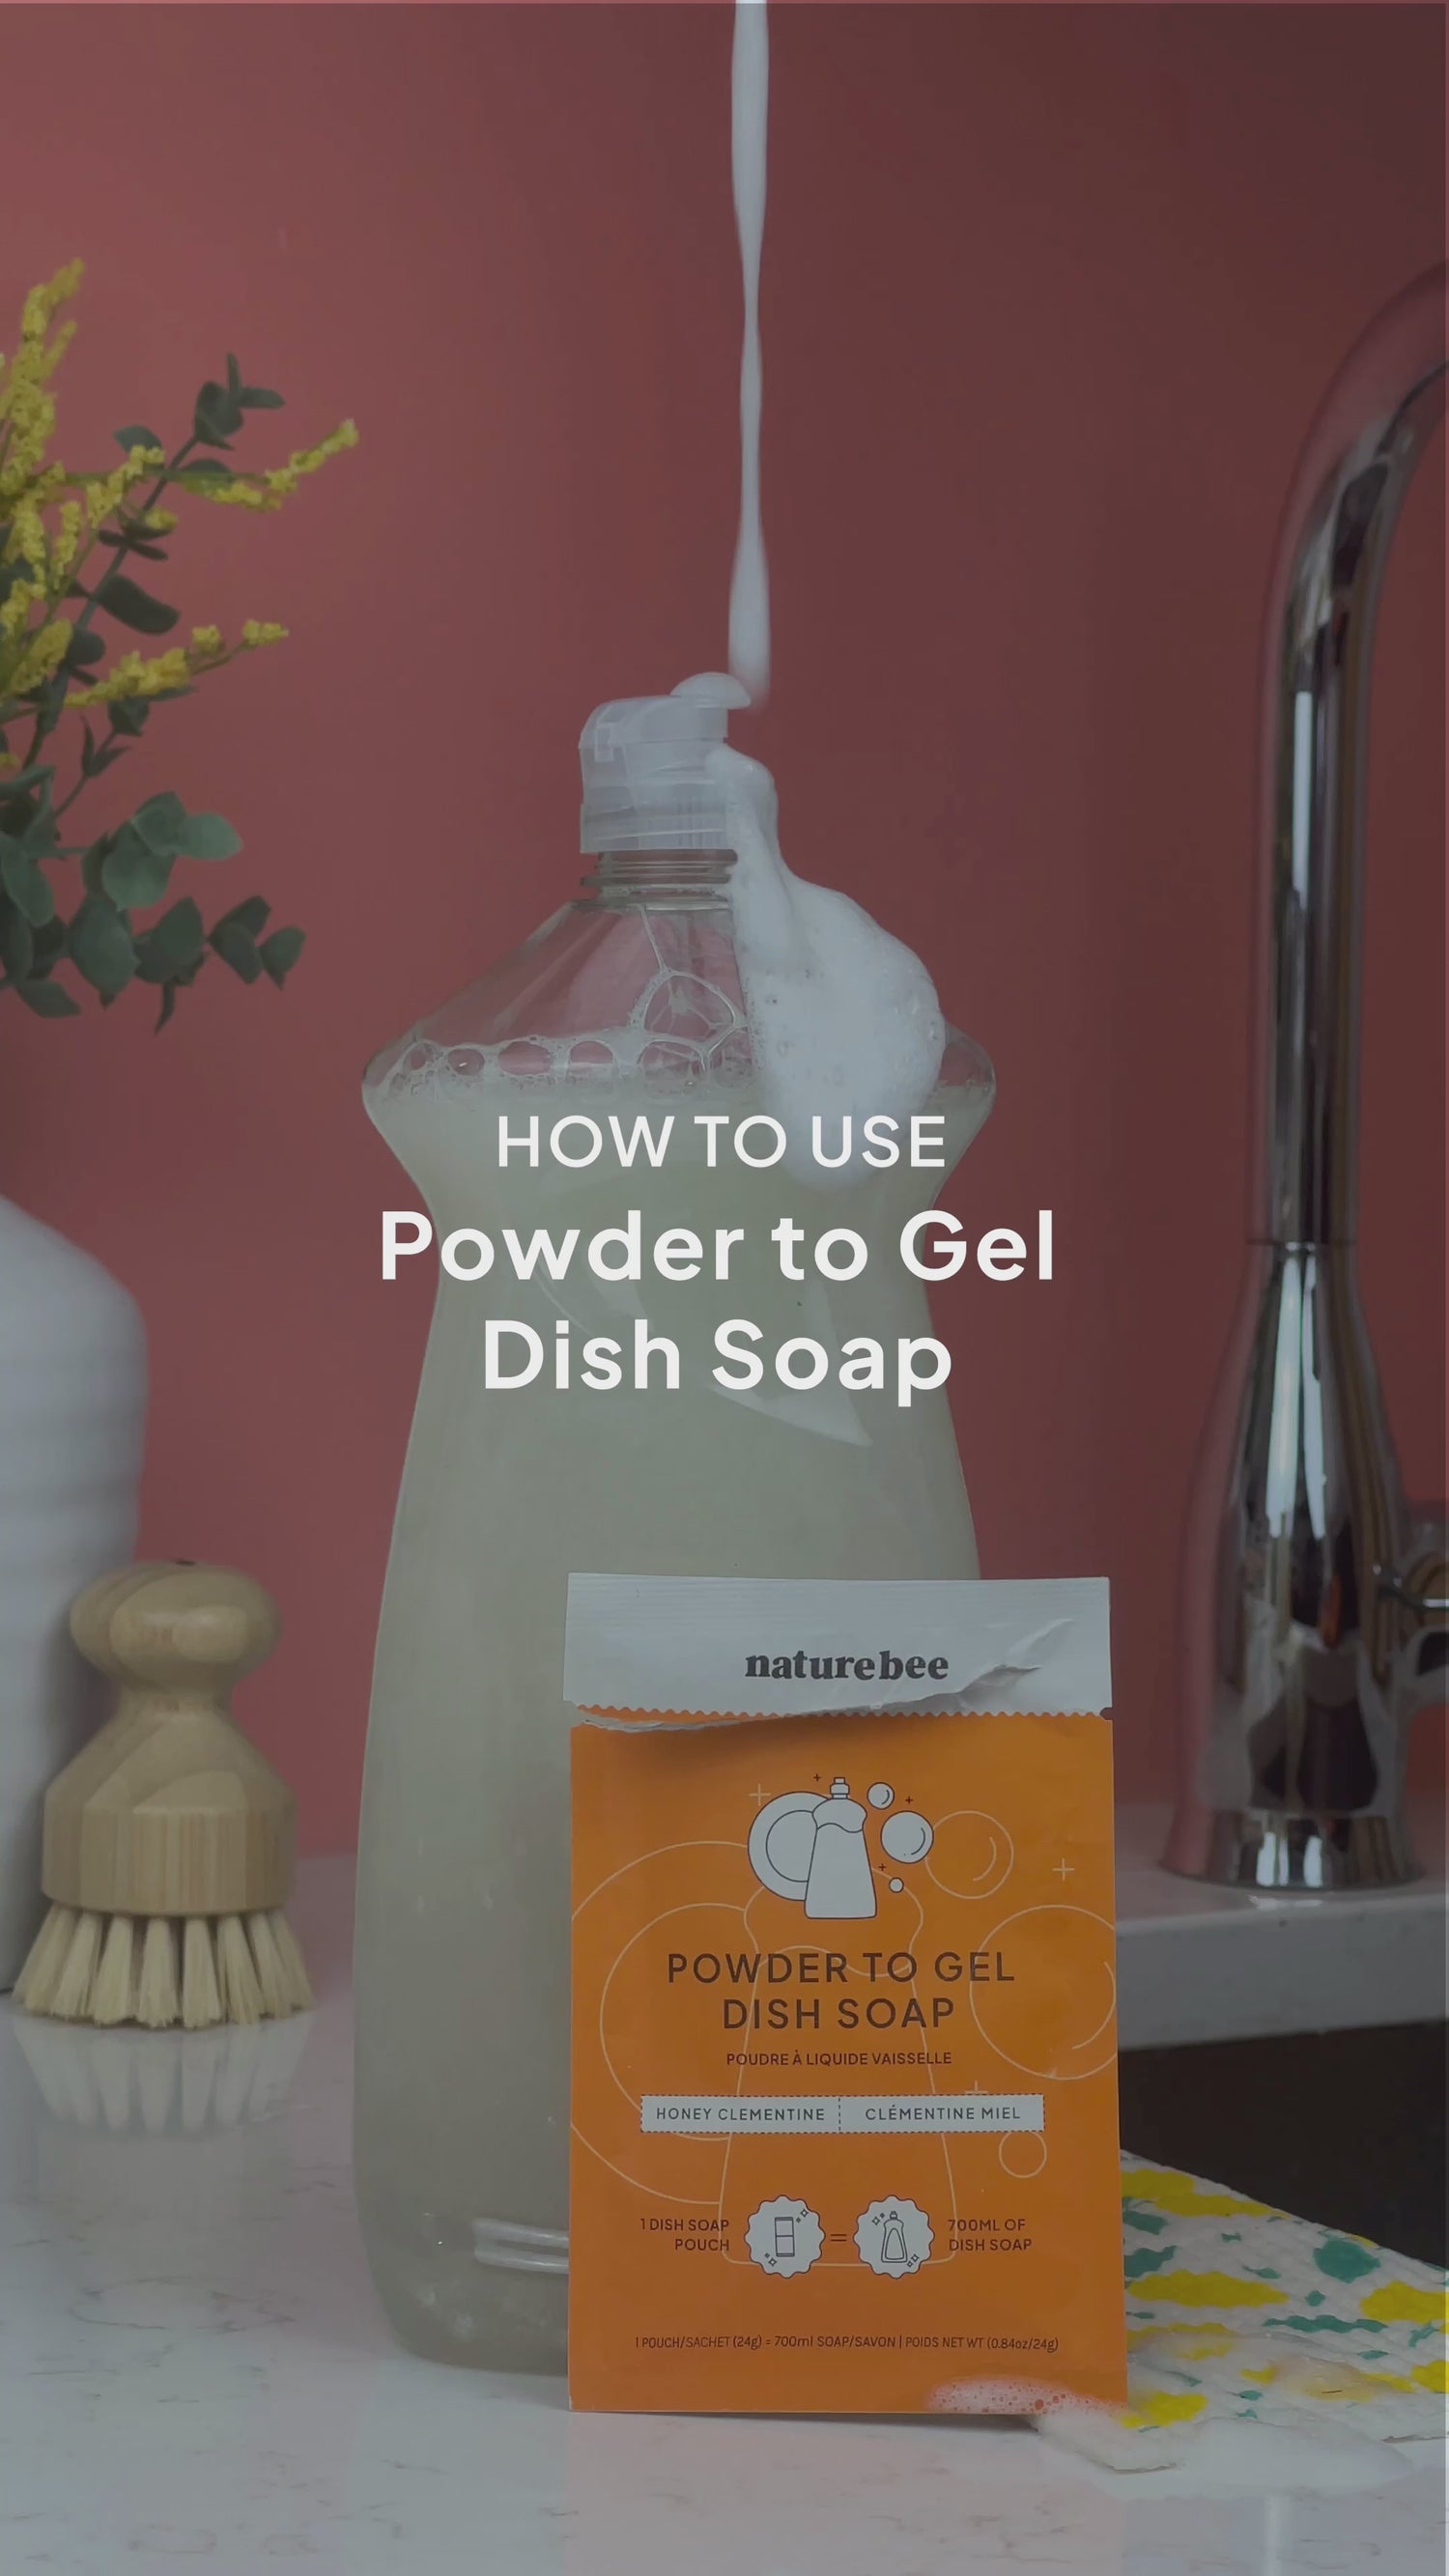 Powder to Gel Kitchen Dish soap